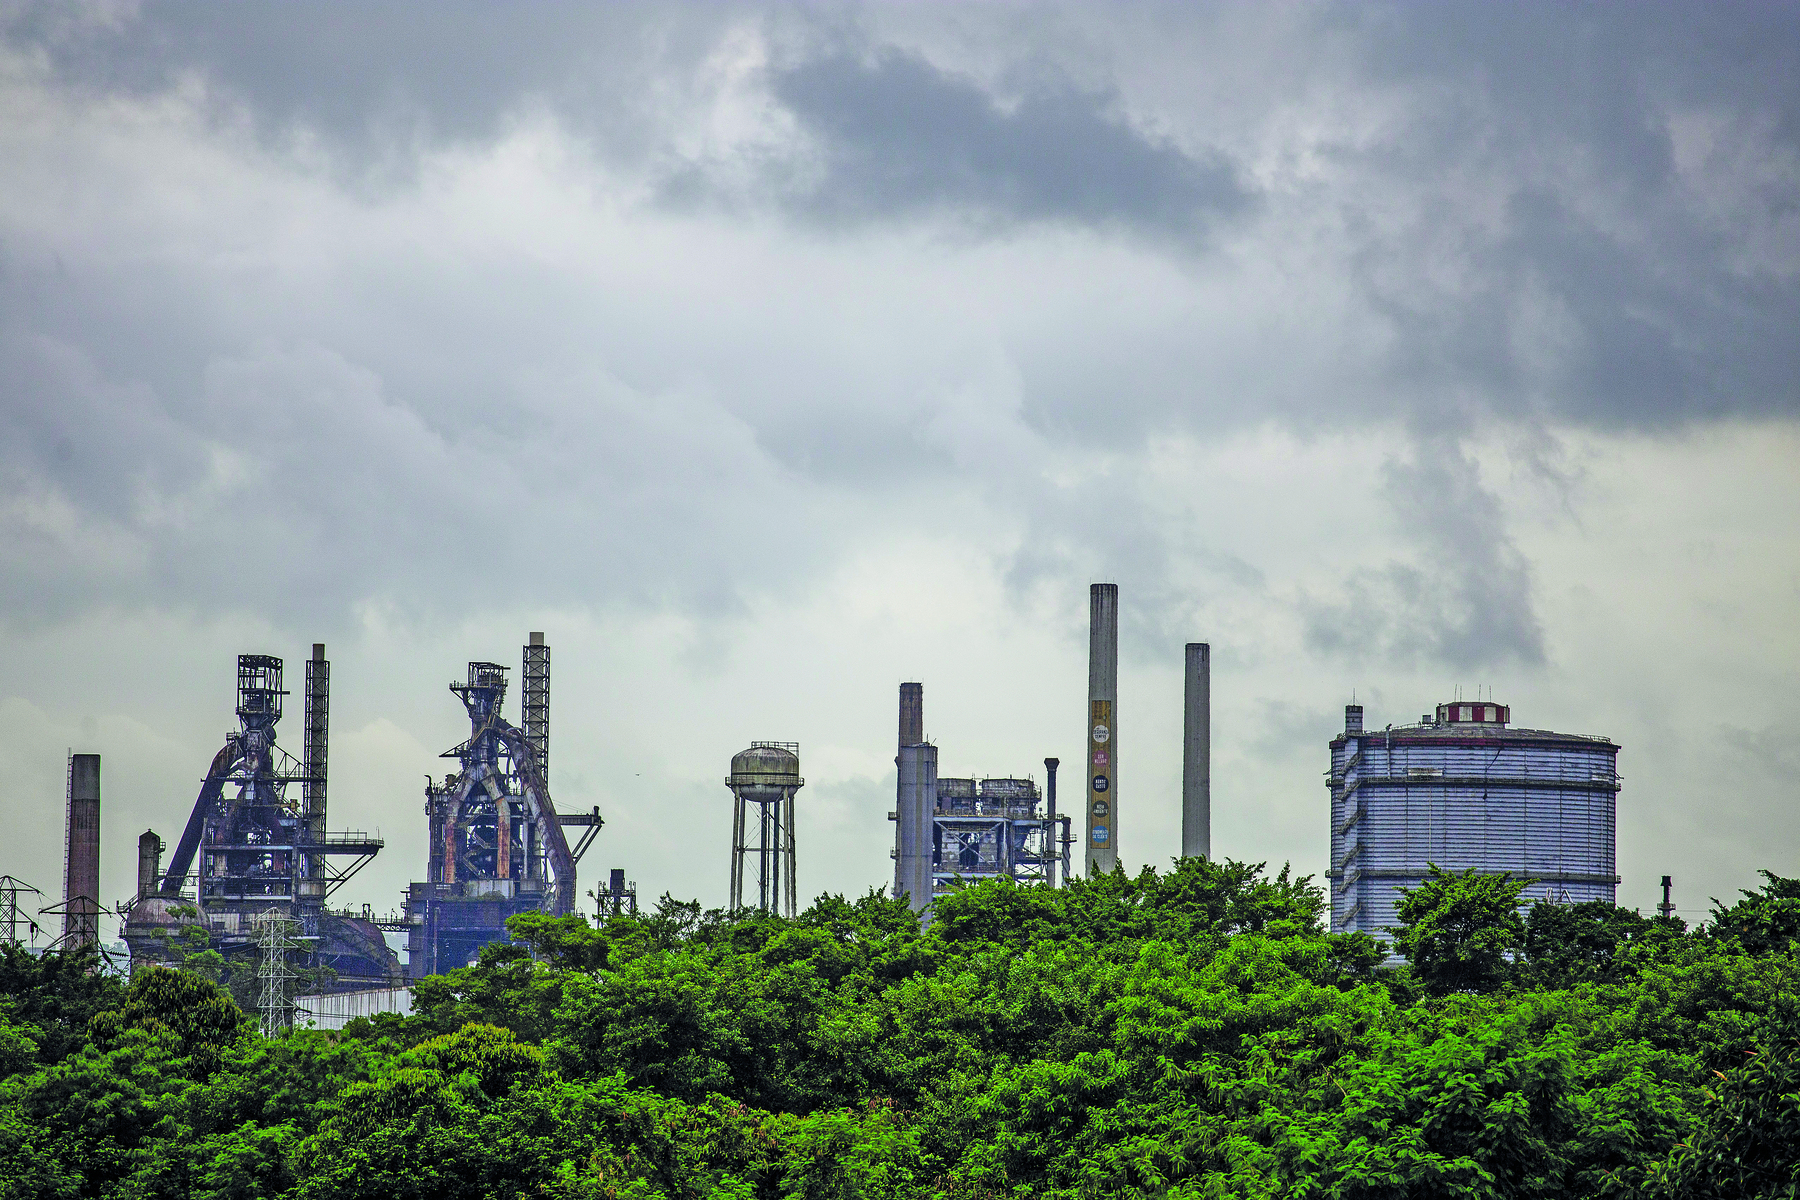 Fotografia. Sob um céu escuro e nublado, vista de chaminés de fábricas e usinas, lado a lado. Em primeiro plano uma faixa de vegetação formada por copas de árvores.